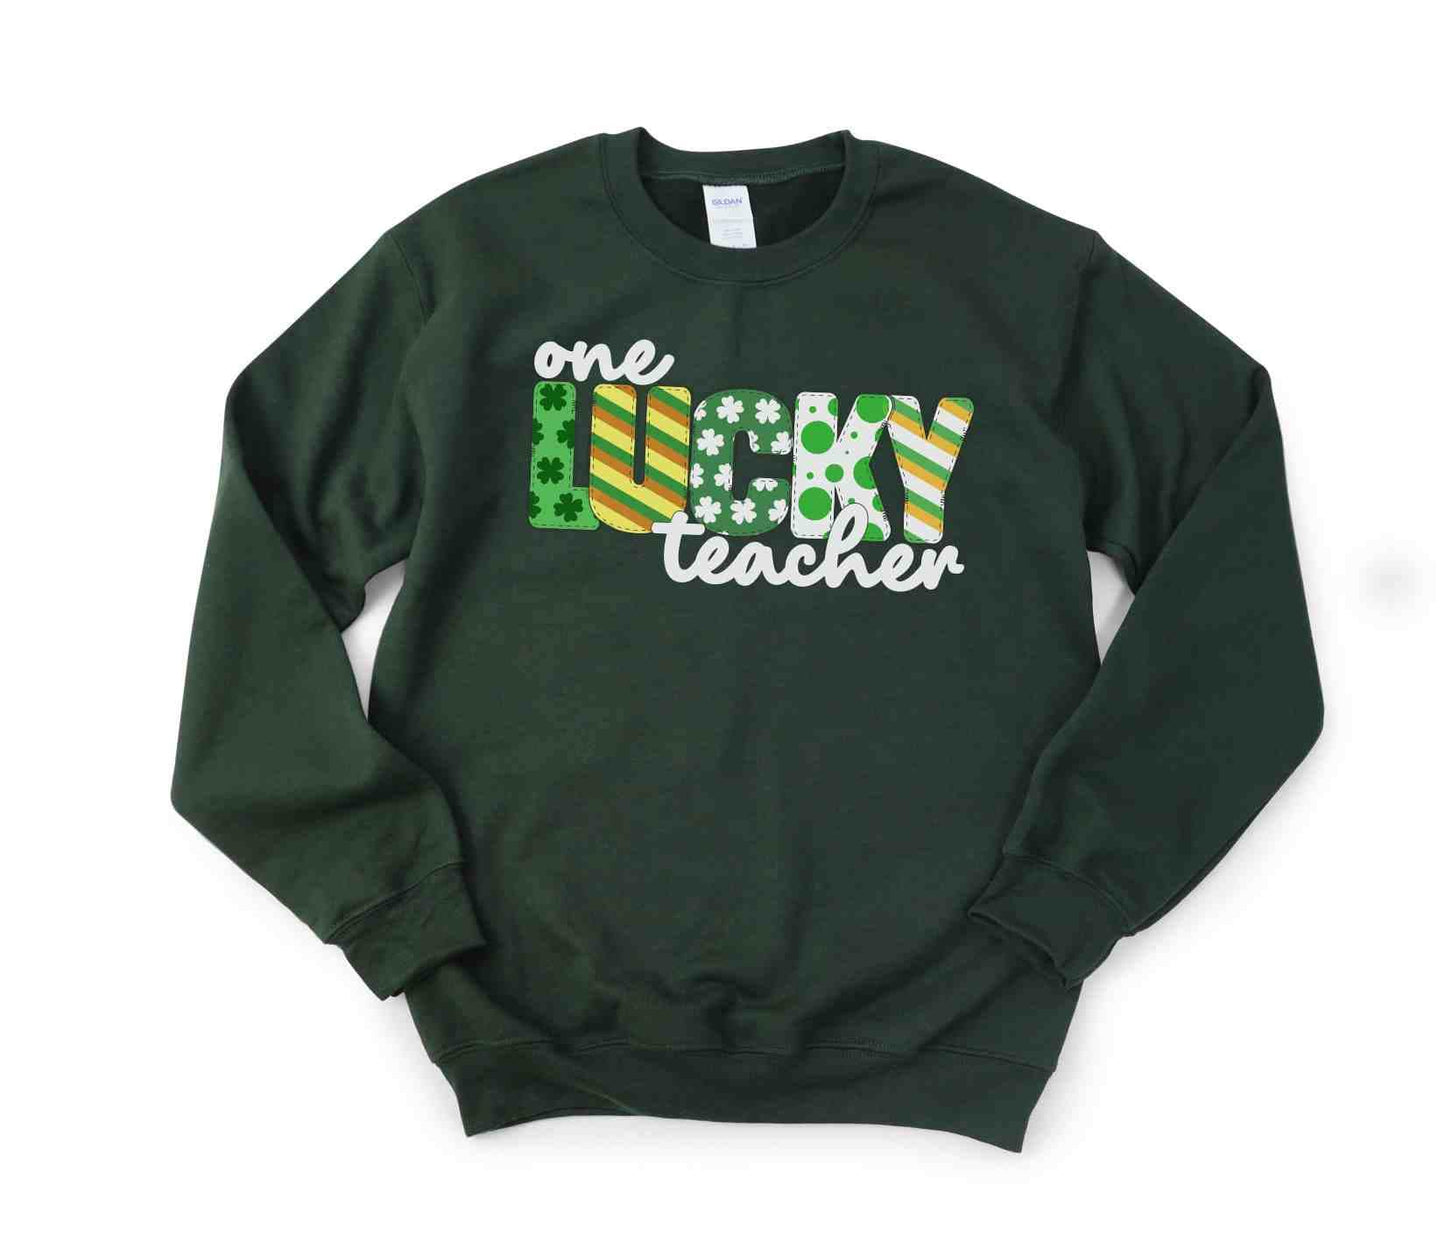 St. Patrick's Teacher Sweatshirt, One Lucky Teacher, Shamrocks, Gift for Teacher, School party shirt, Shamrock Graphic, Teacher Appreciation - SBS T Shop